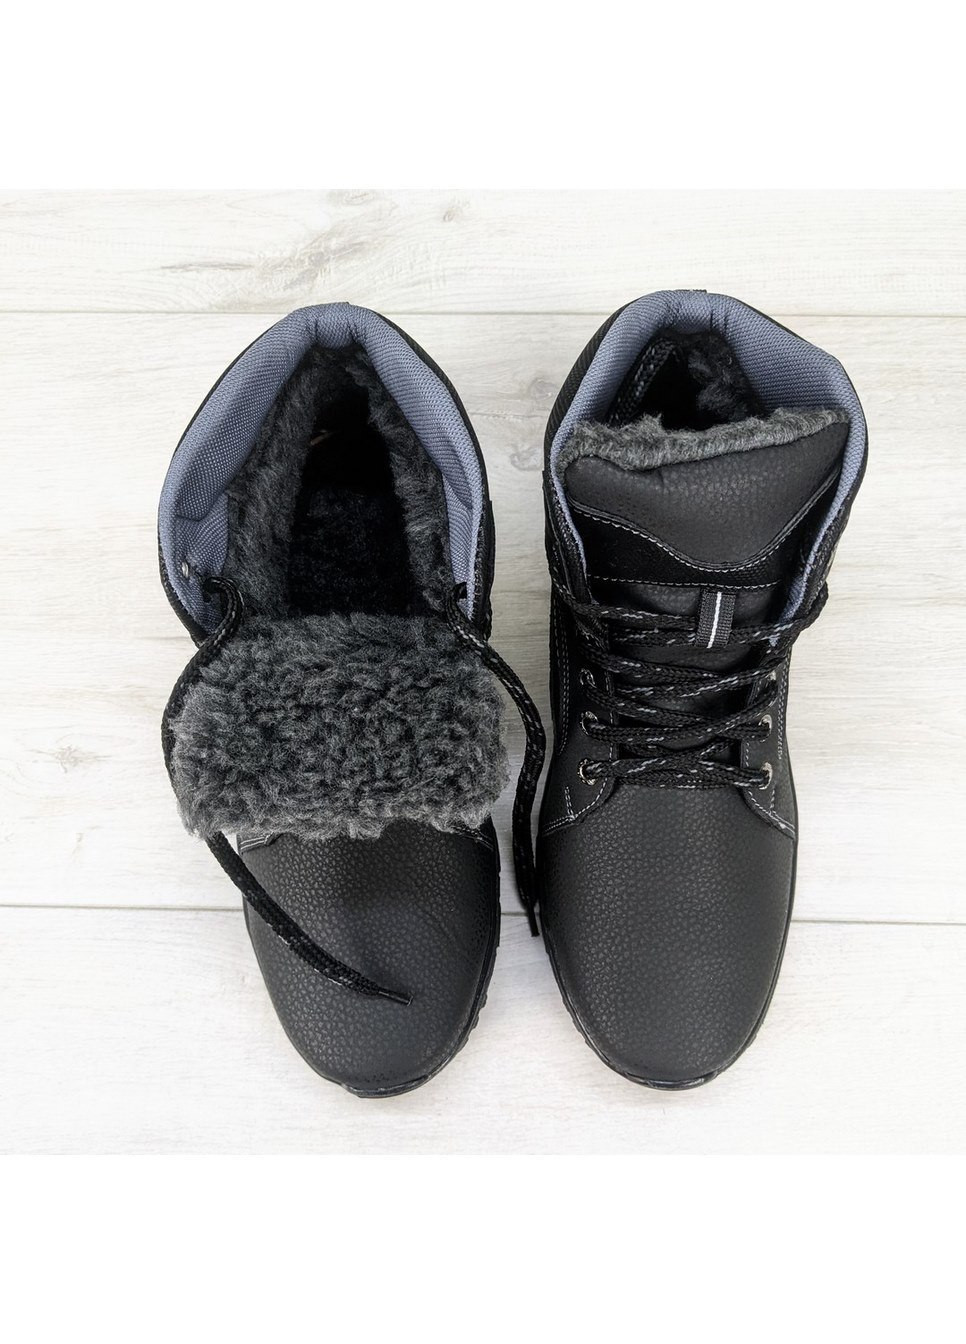 Черные зимние ботинки мужские зимние спортивного стиля Yulius